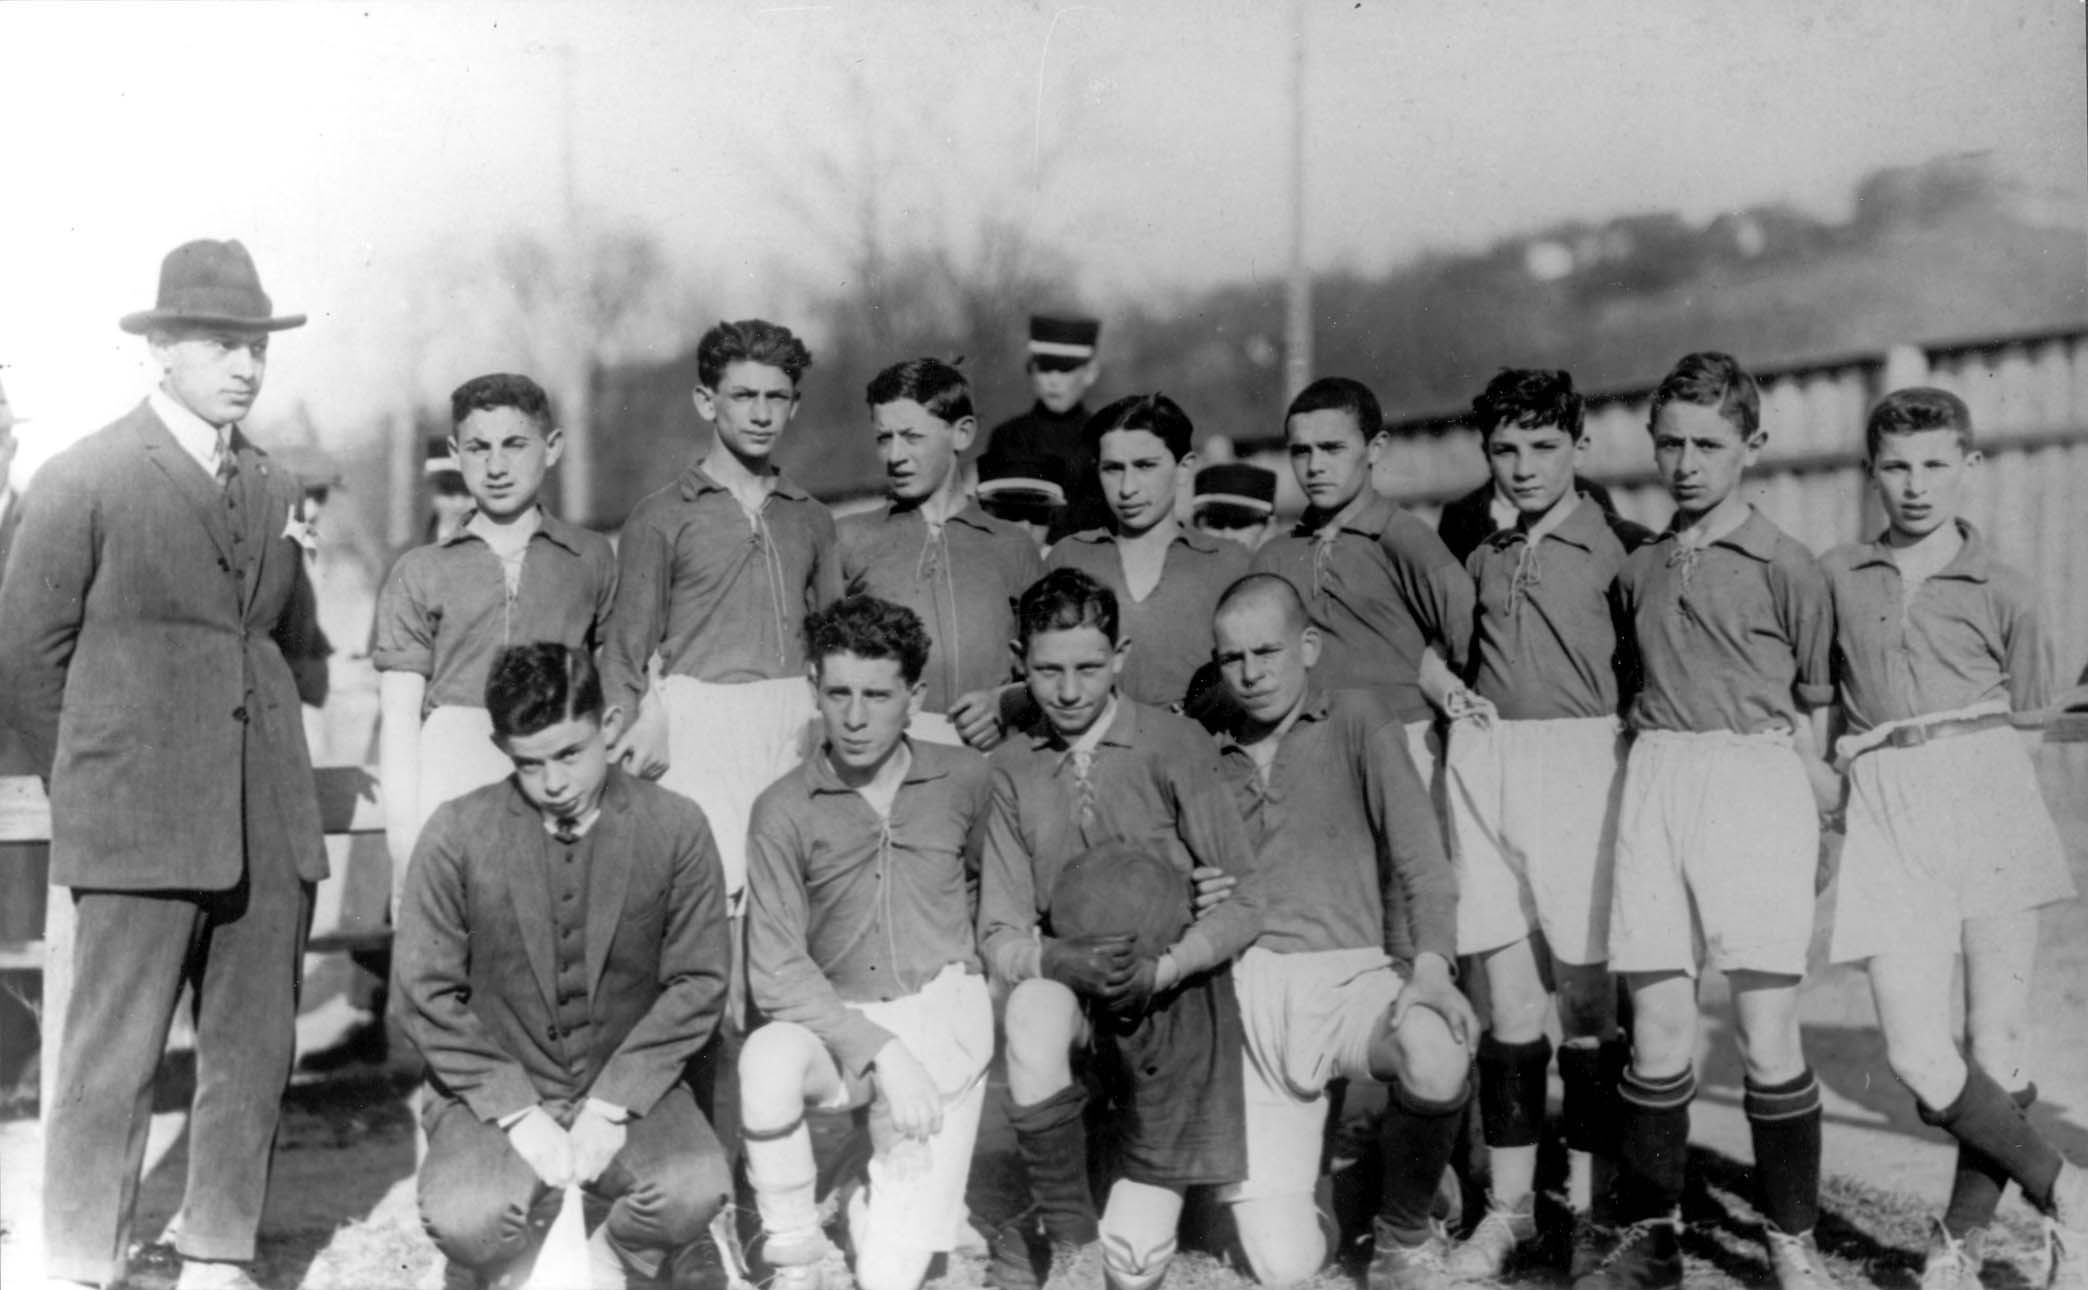 קבוצת כדורגל של נוער יהודי בקובנה, ליטא, לפני המלחמה.